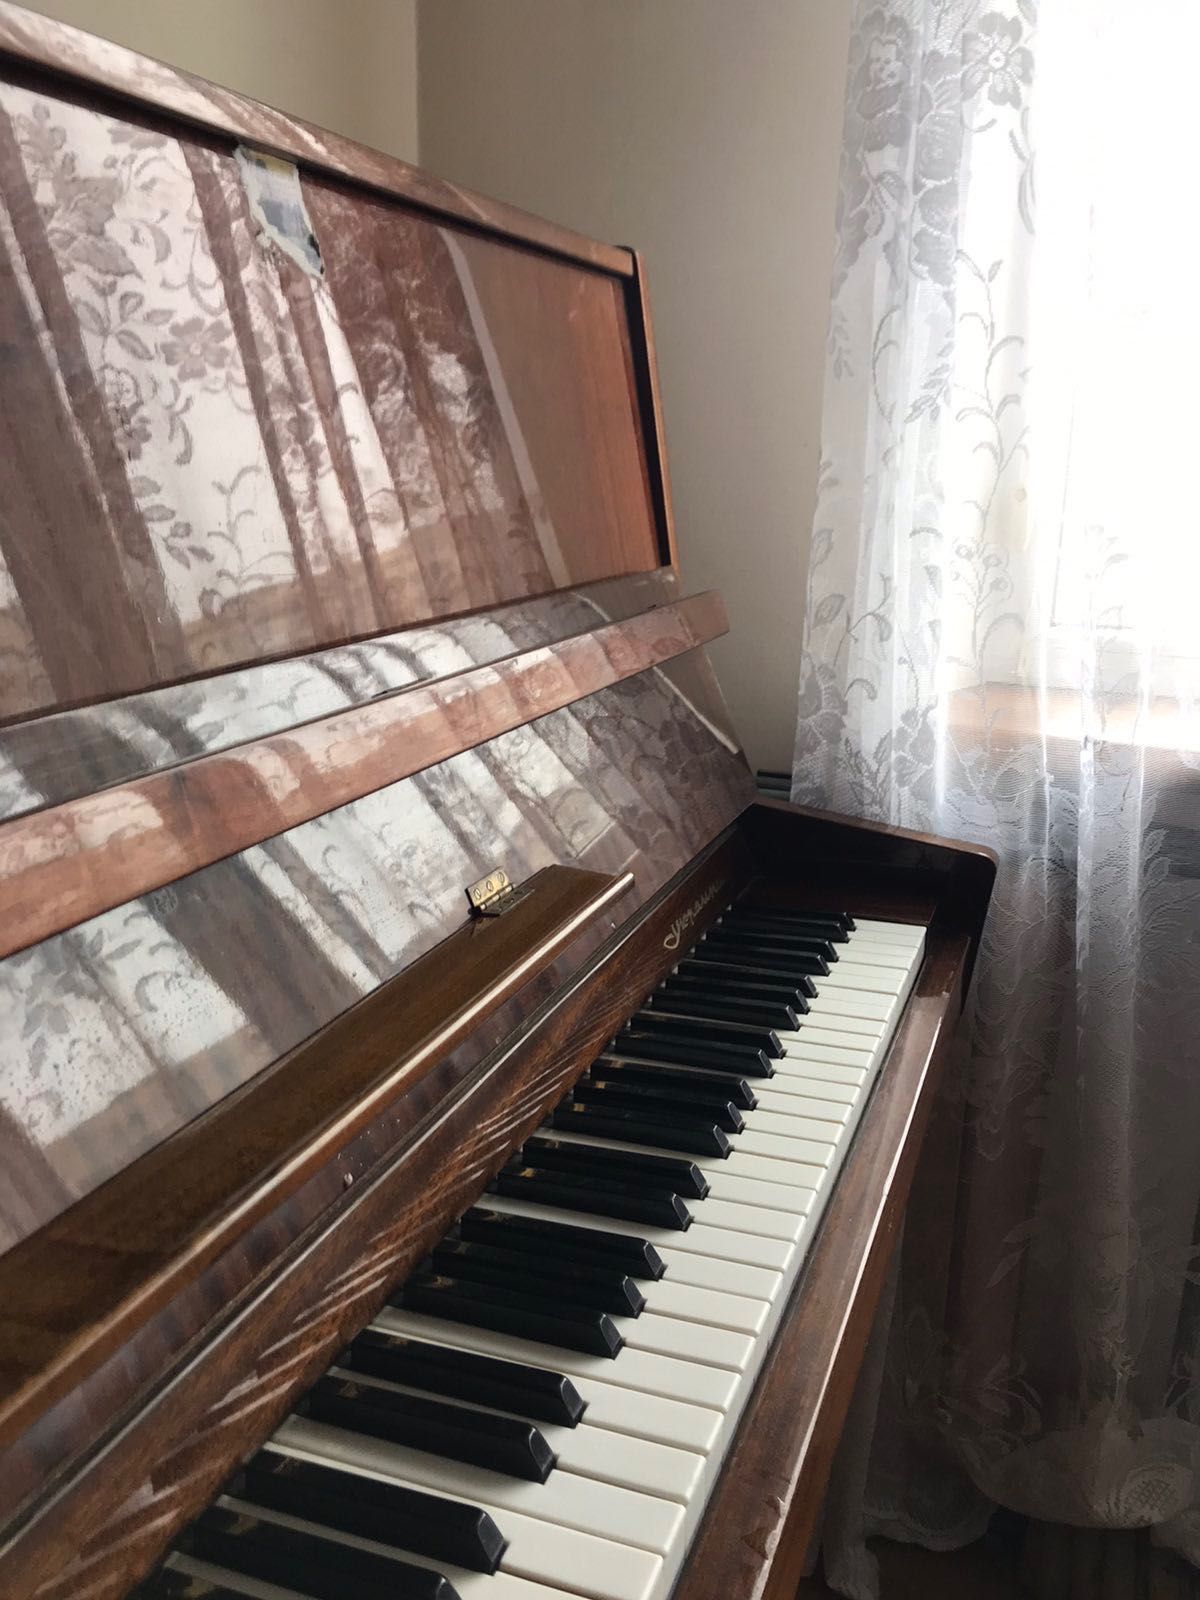 Пианино Украина в хорошем состоянии